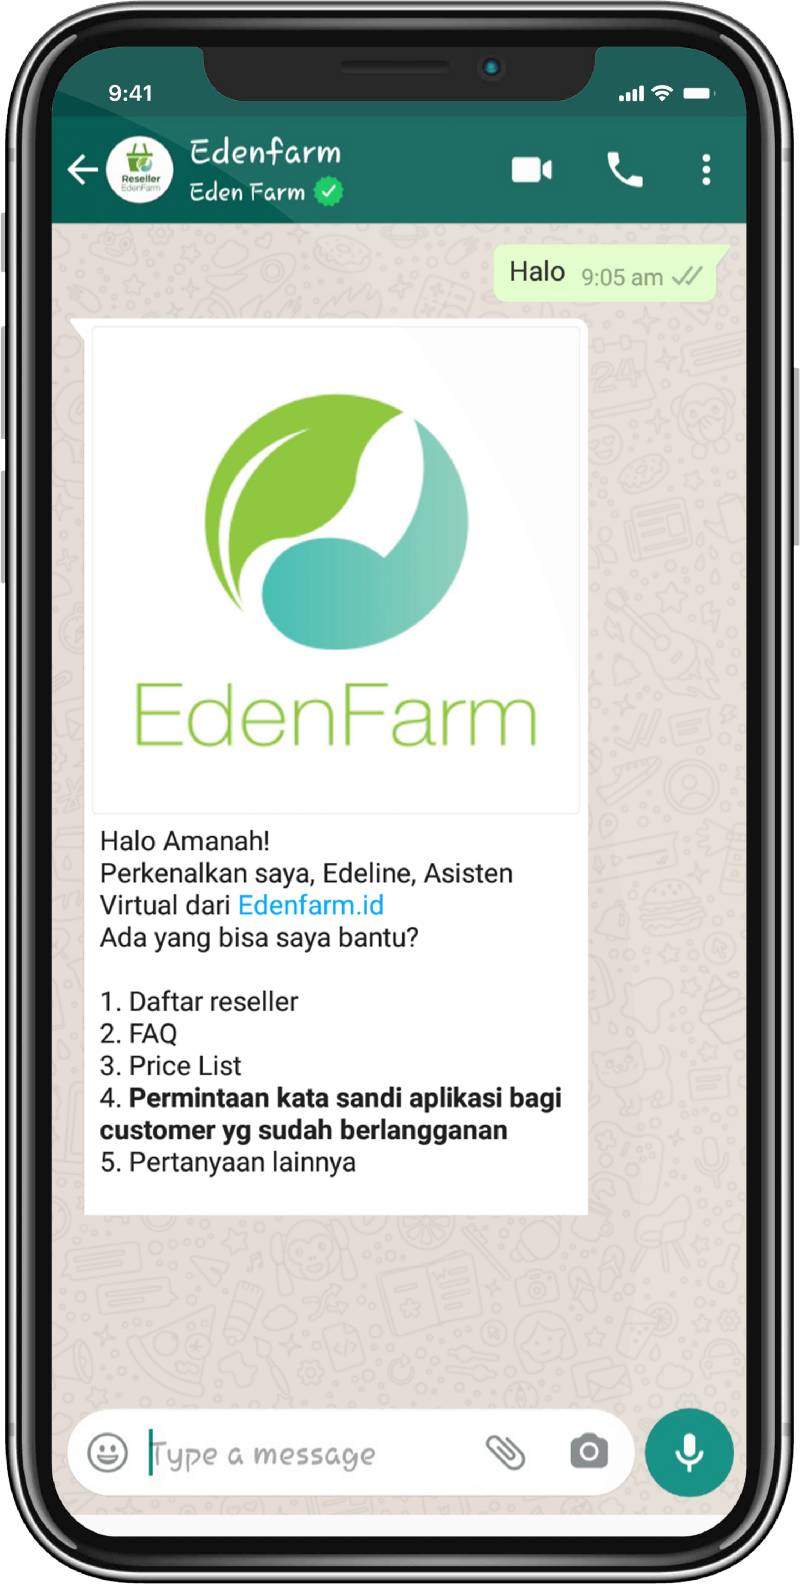 Eden Farm Reseller 1